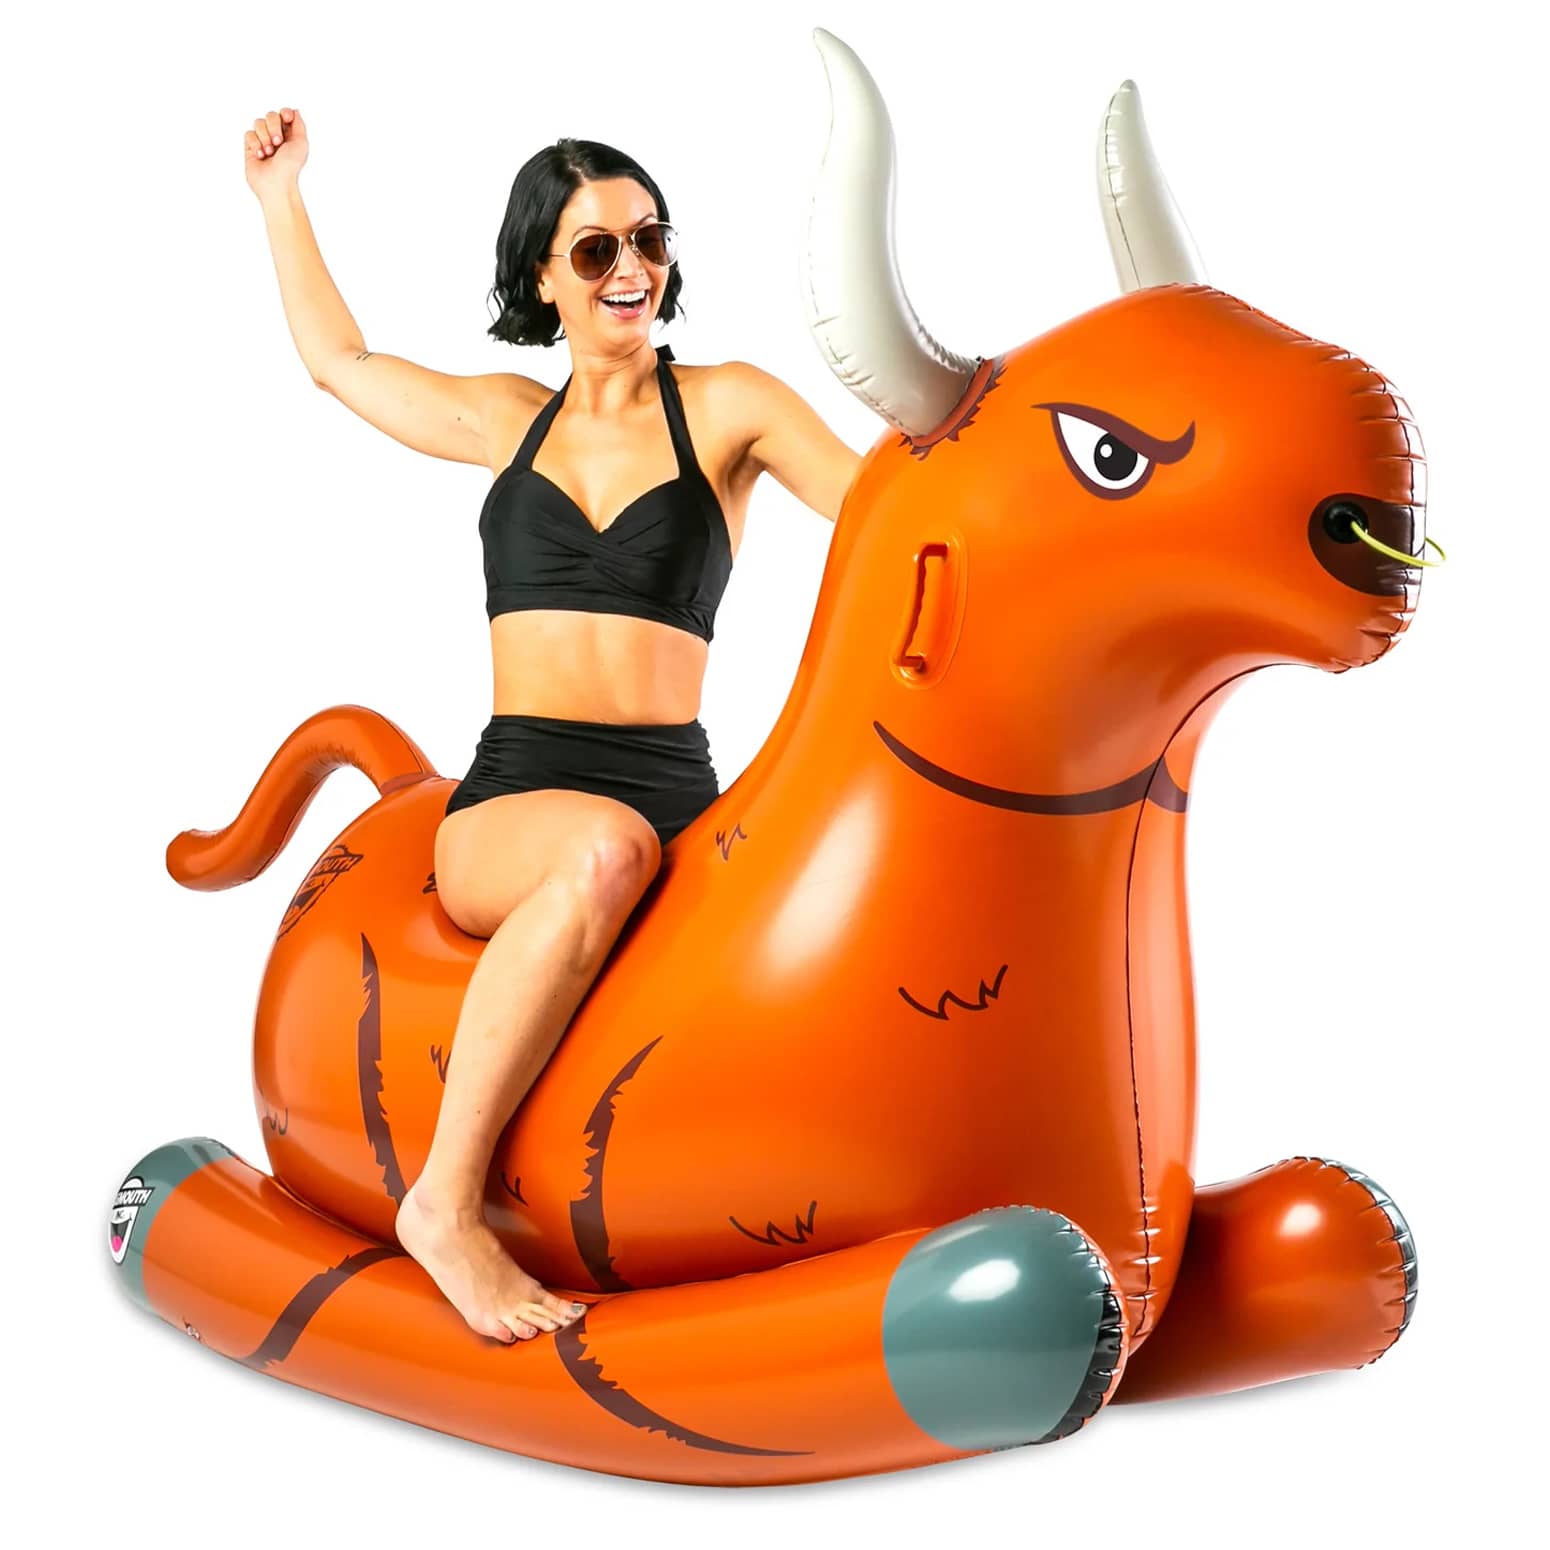 Bull Rocker - Giant Inflatable Bull Riding Pool Float